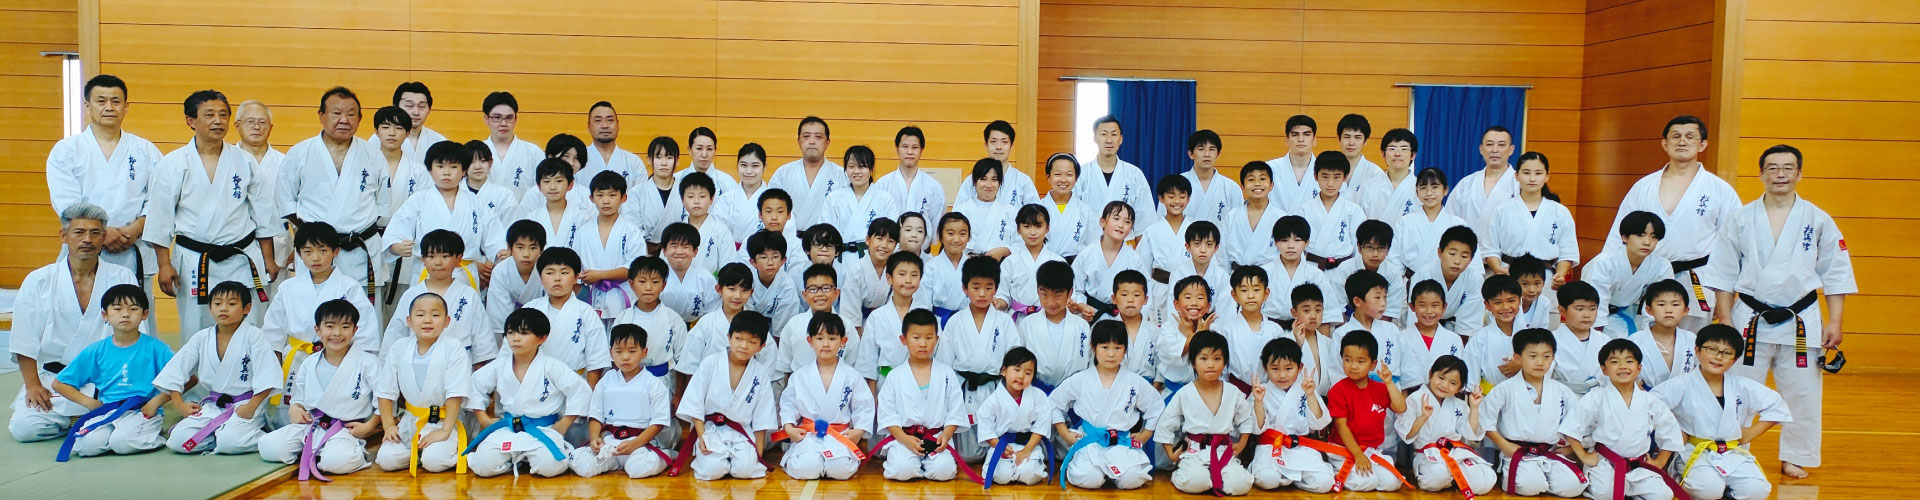 Kyokushinkan Seminar Group Photo